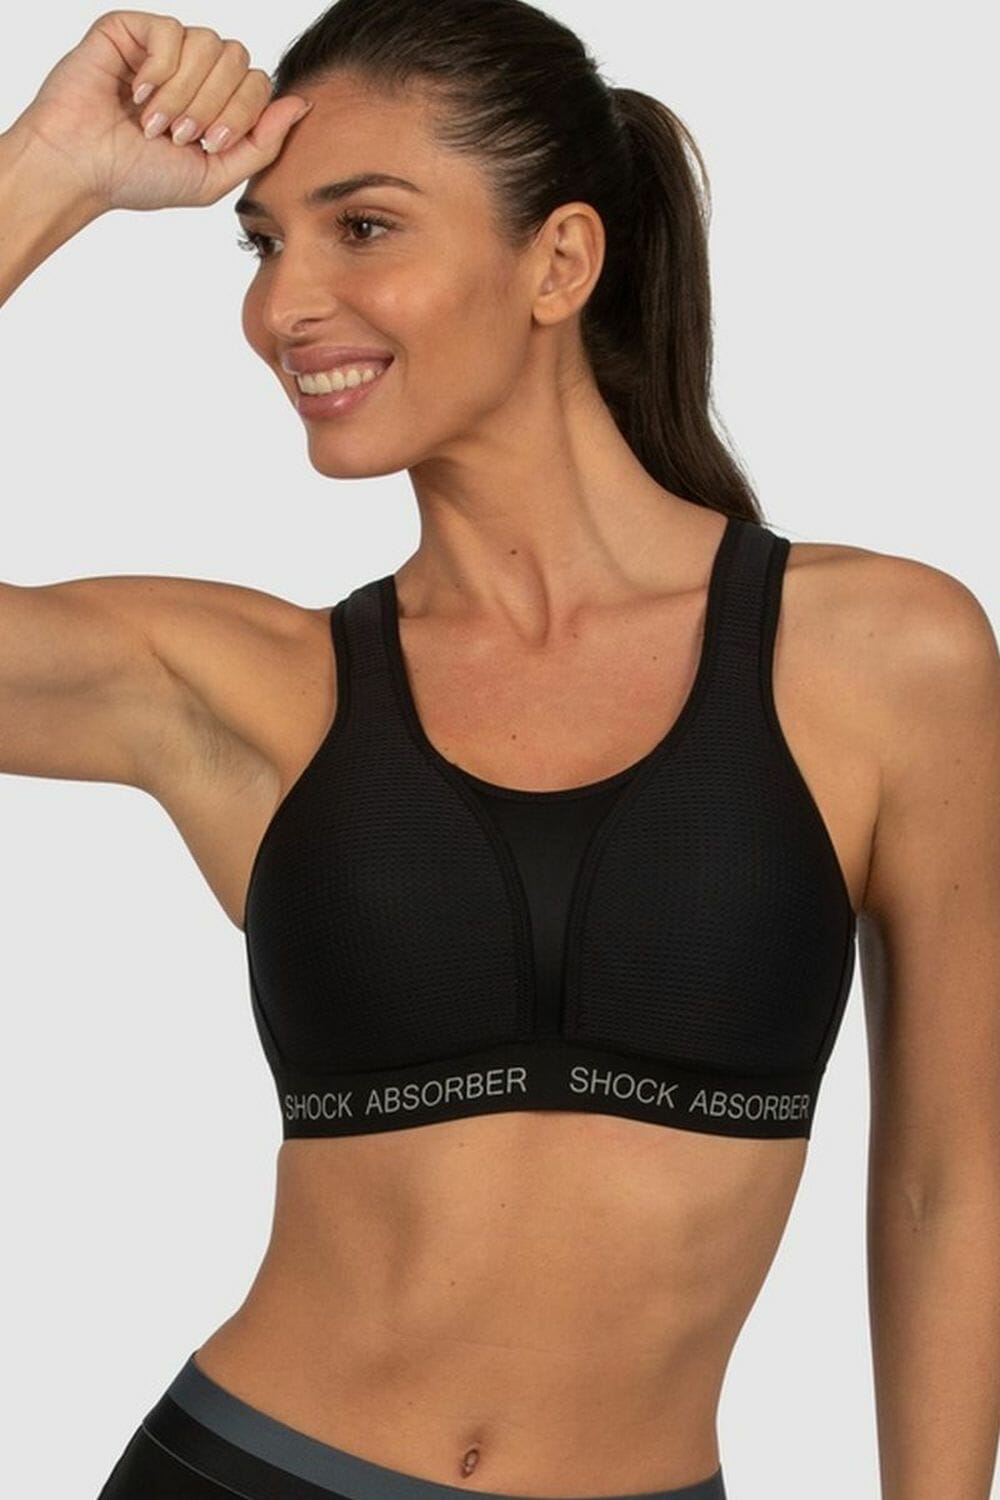 Shock absorber ultimate run bra in black - image girl flexing in bra